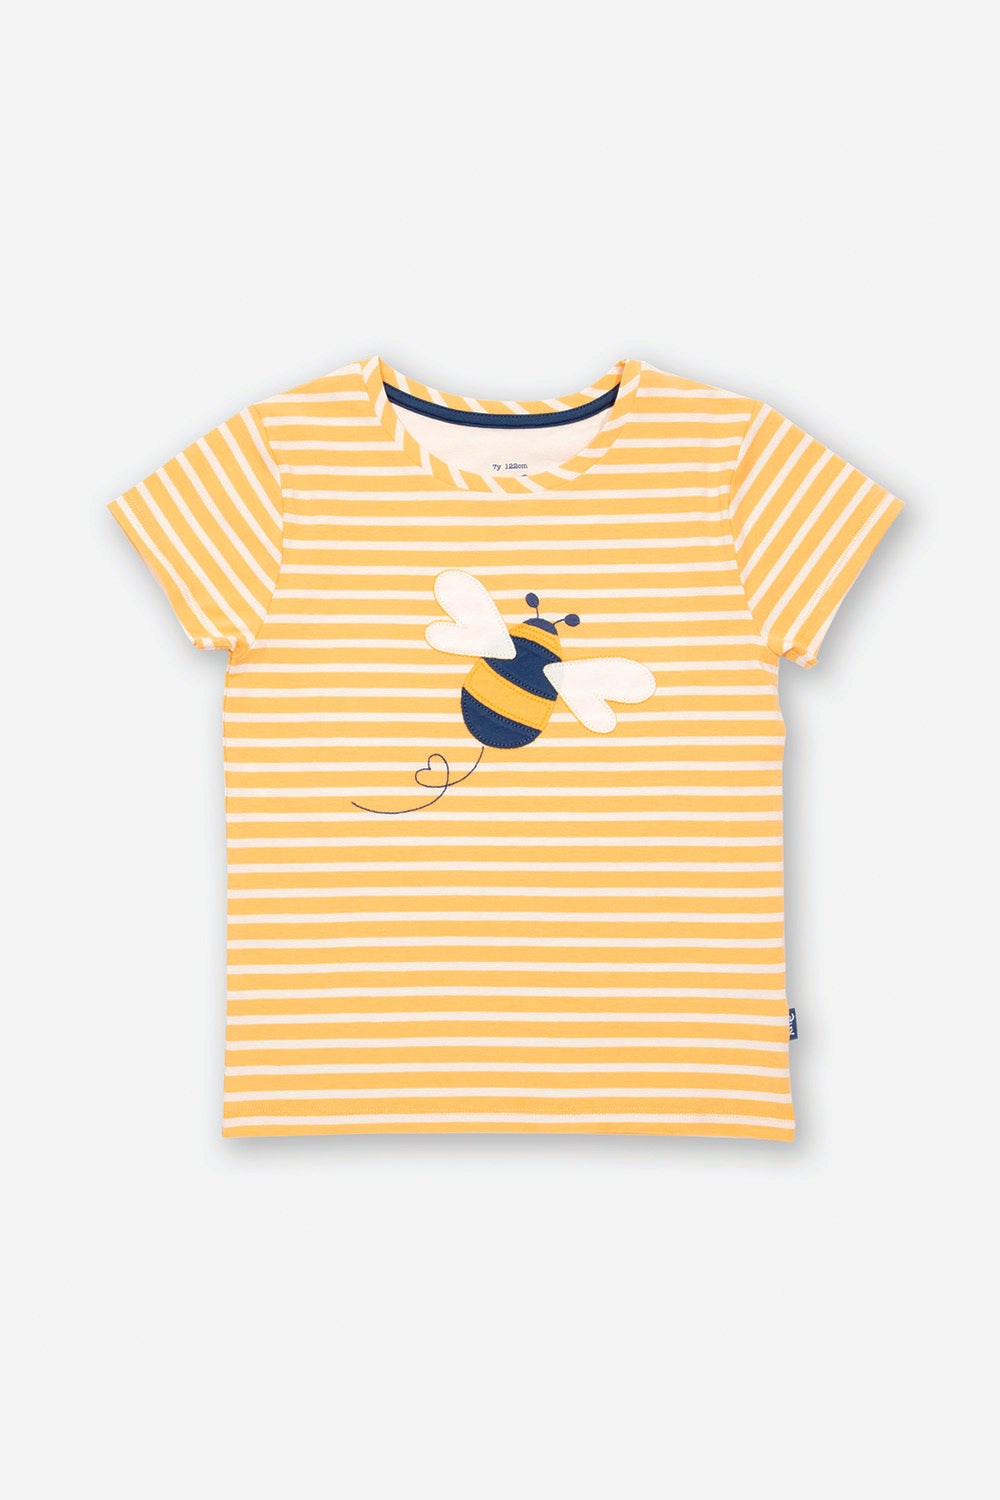 Queen Bee Kids Organic Cotton T-Shirt -